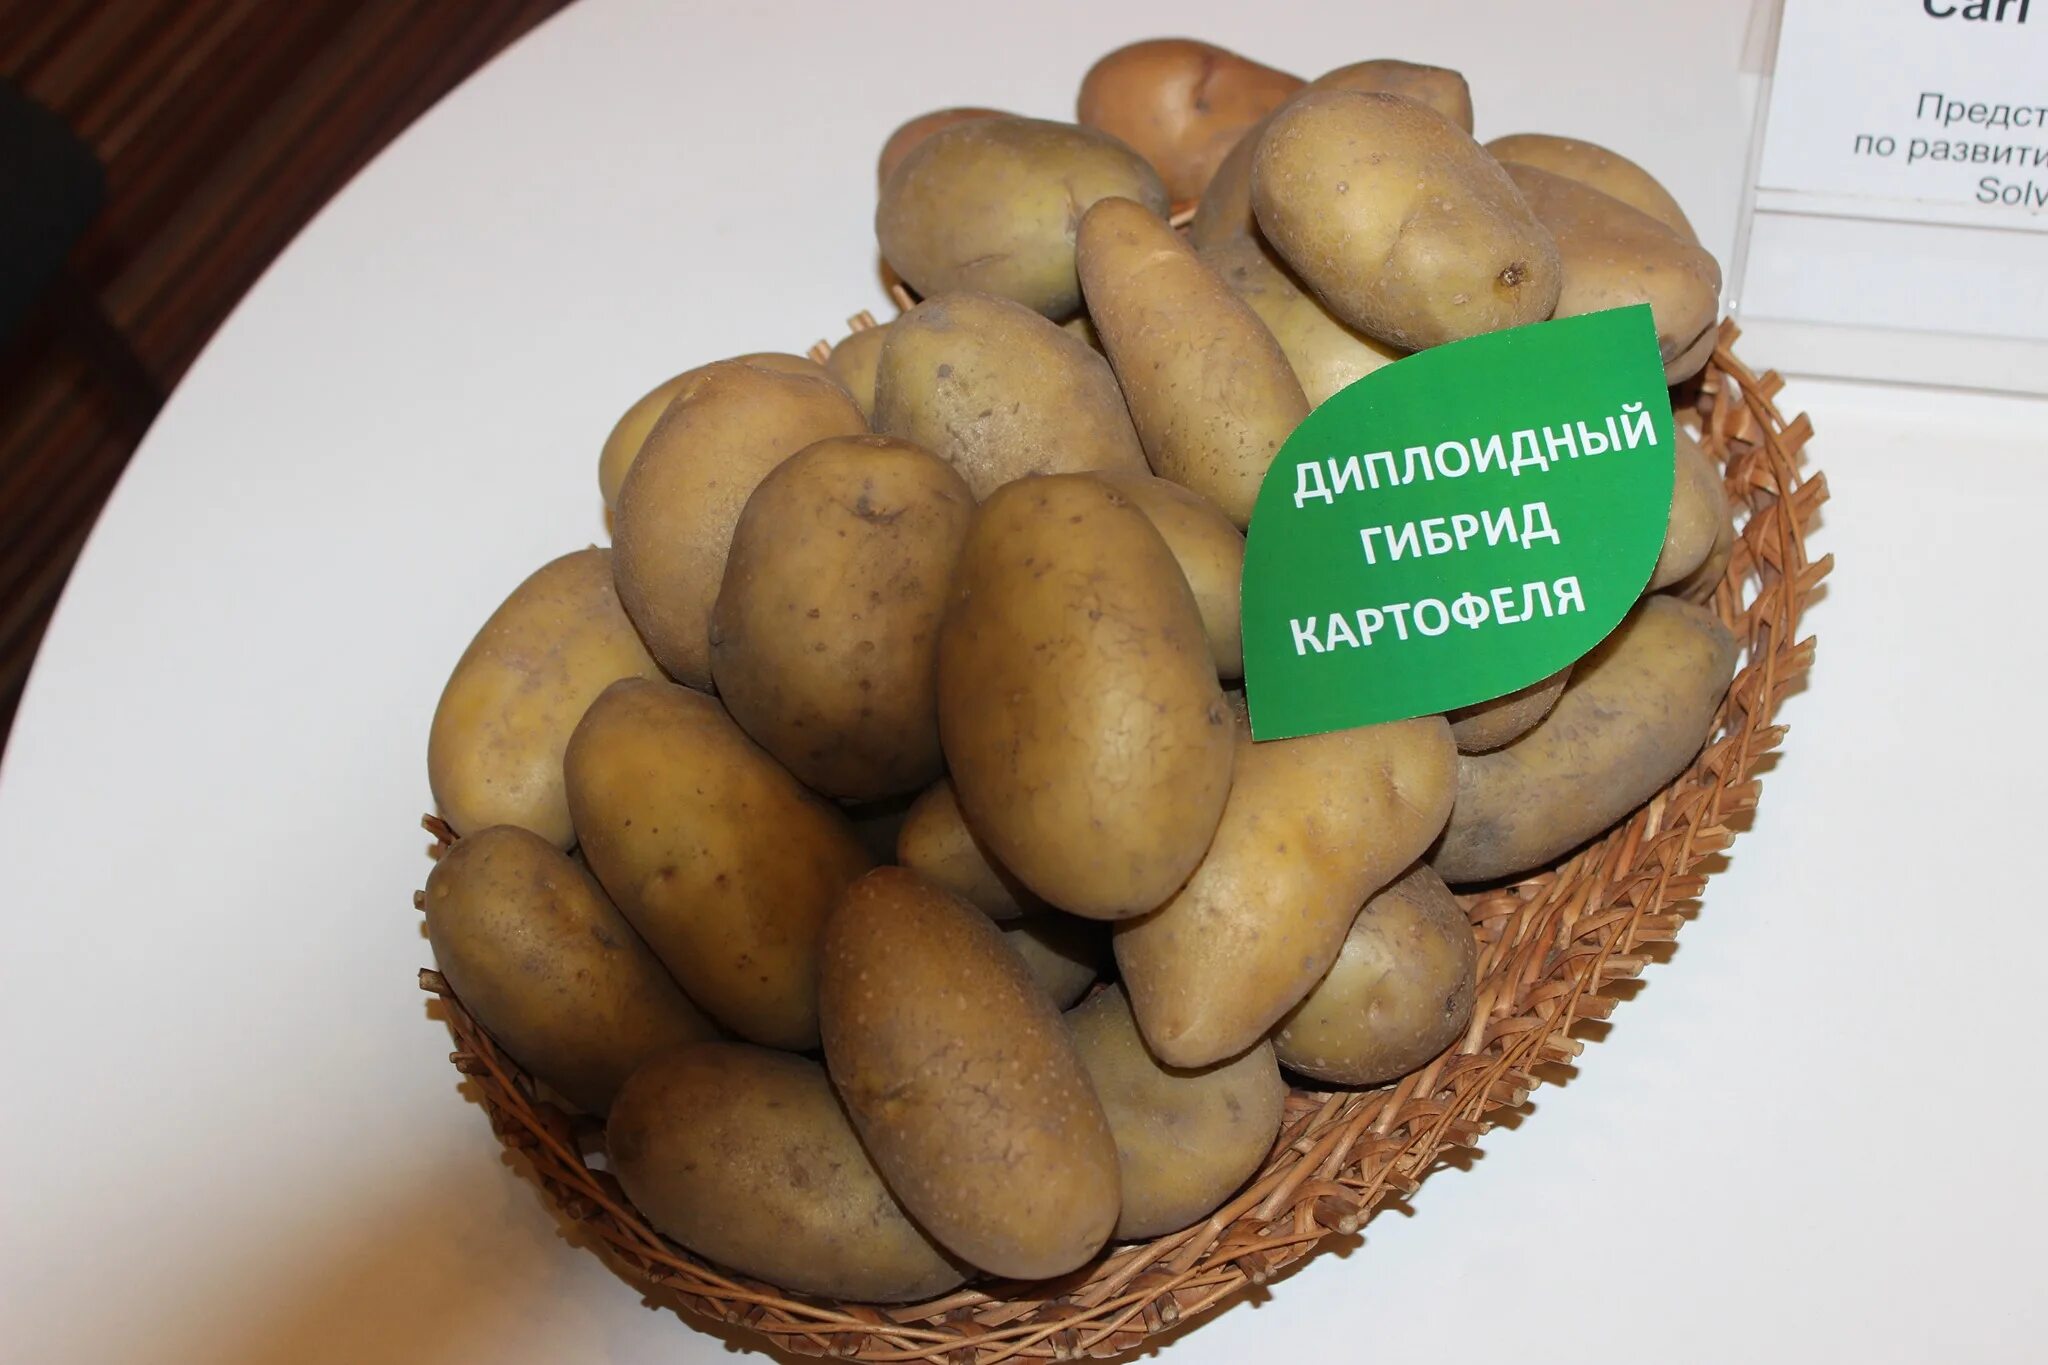 Гибриды картофеля. Картошка гибрид. Семена картофеля. Ботанические семена картофеля.